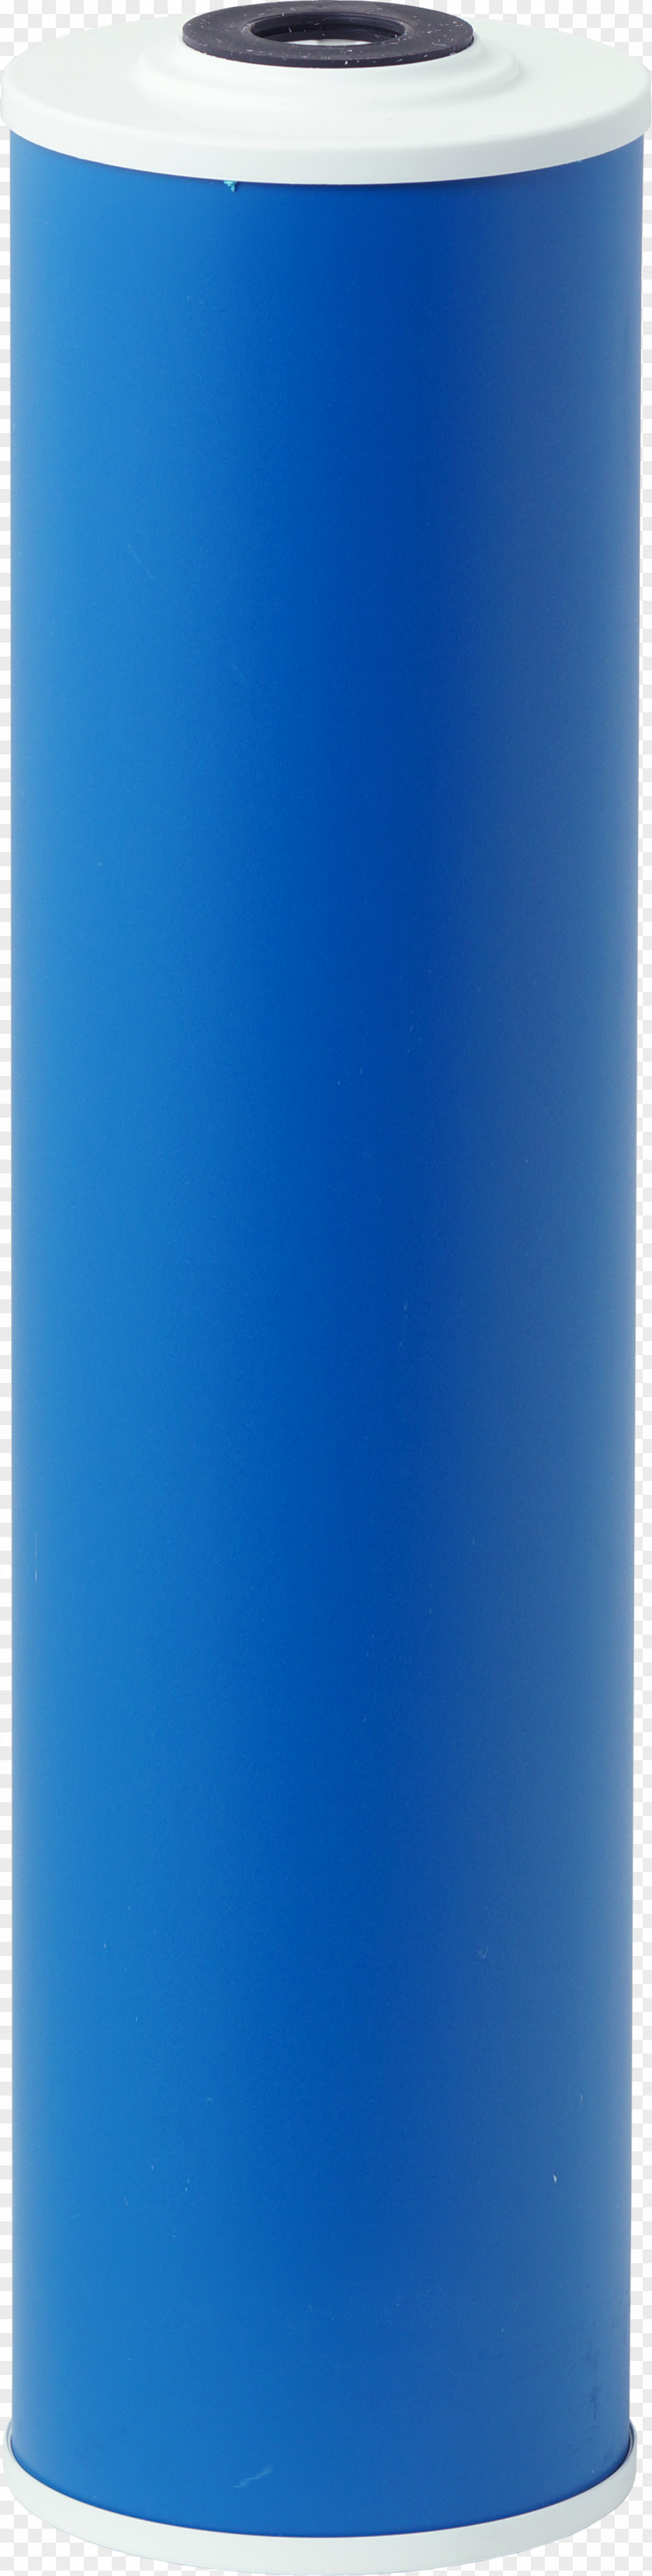 Design Water Filter Cobalt Blue PNG